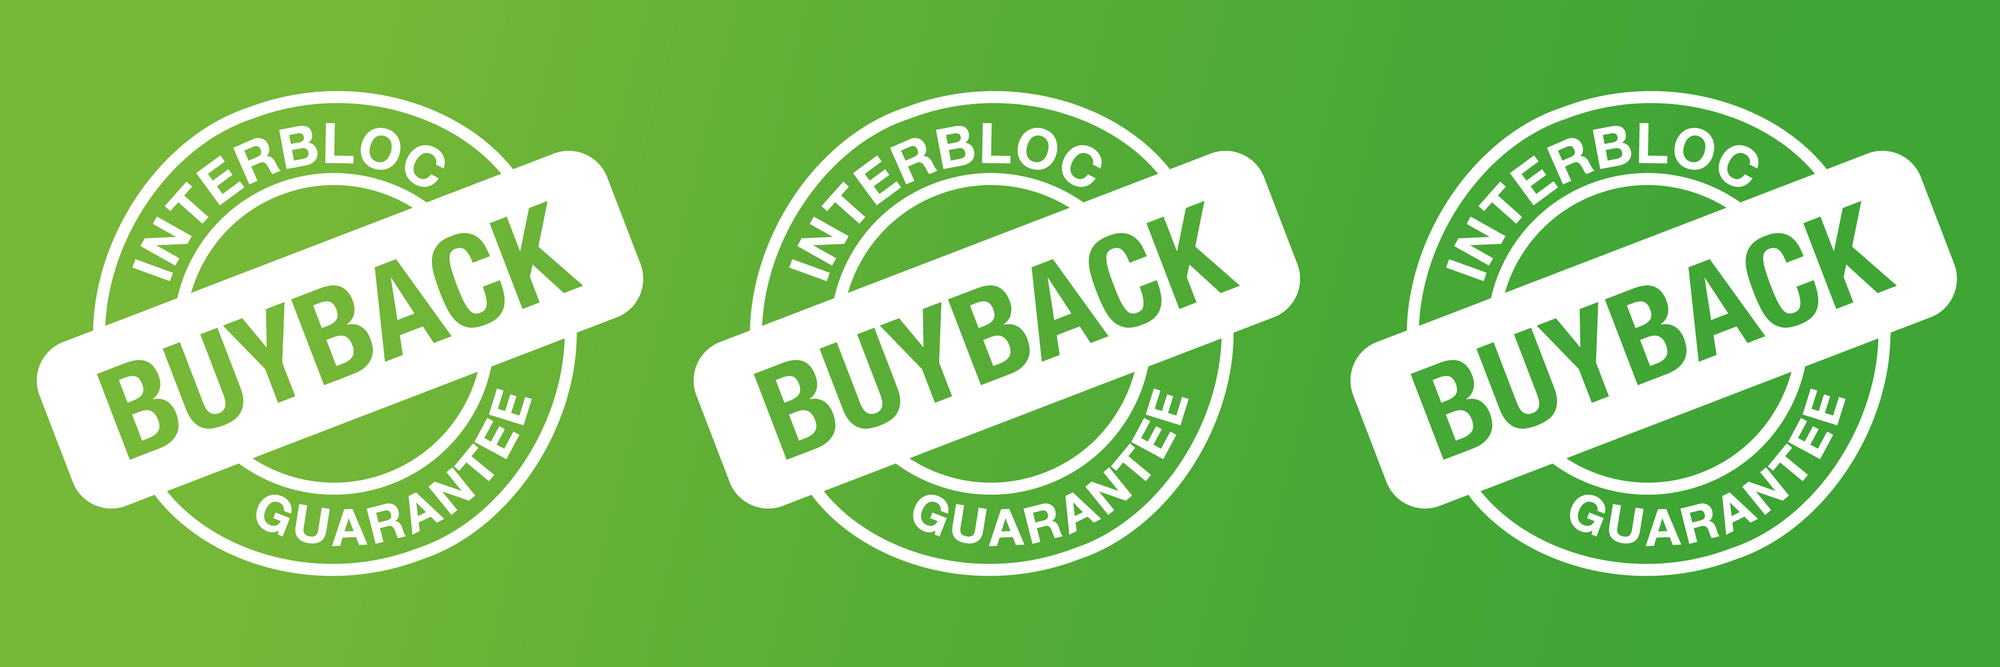 Interbloc's Buyback Guarantee